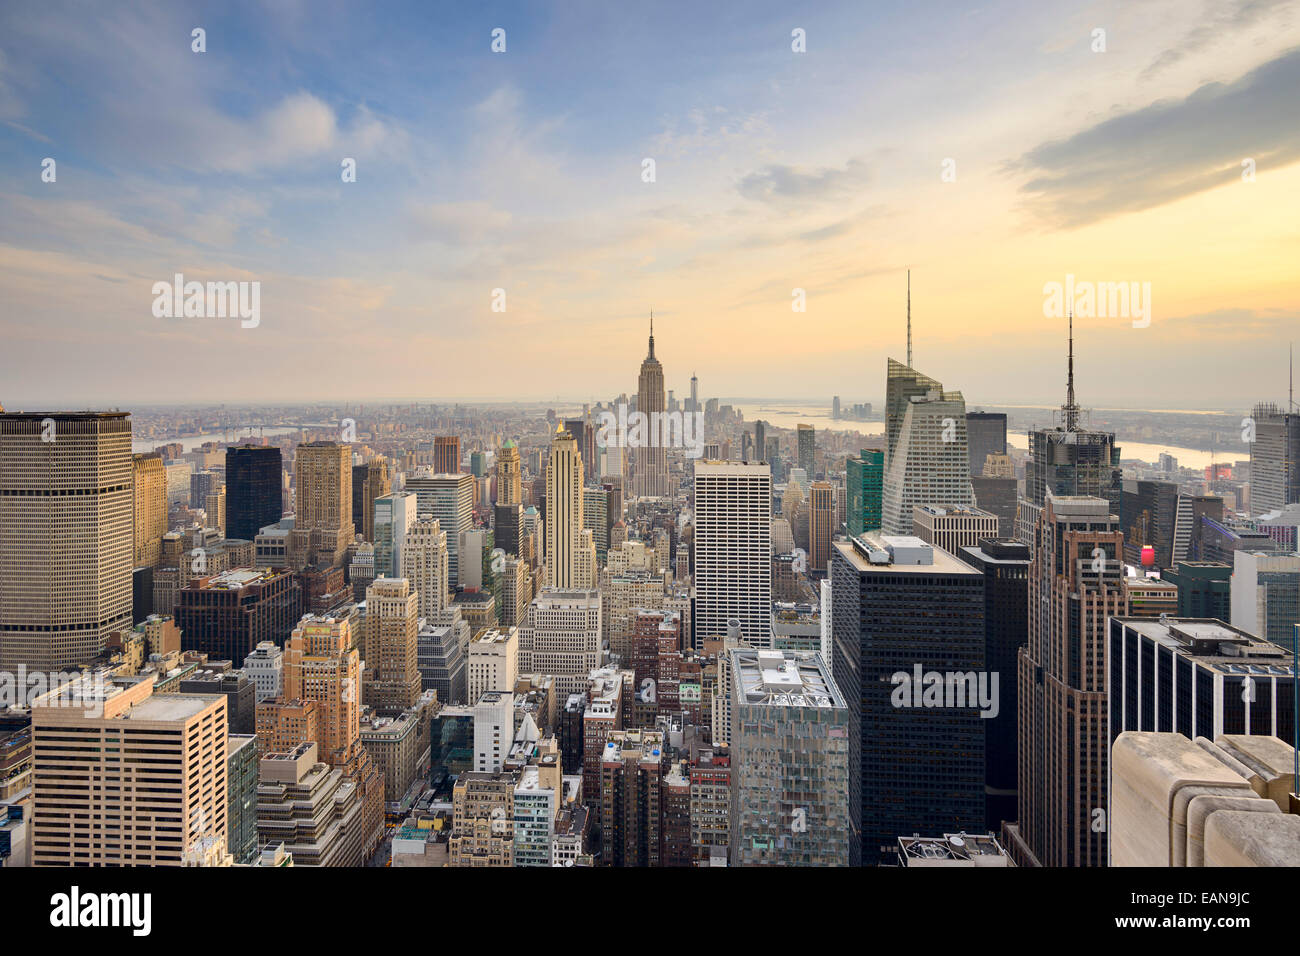 La Ciudad de Nueva York, EE.UU., el horizonte de la ciudad de Midtown Manhattan. Foto de stock